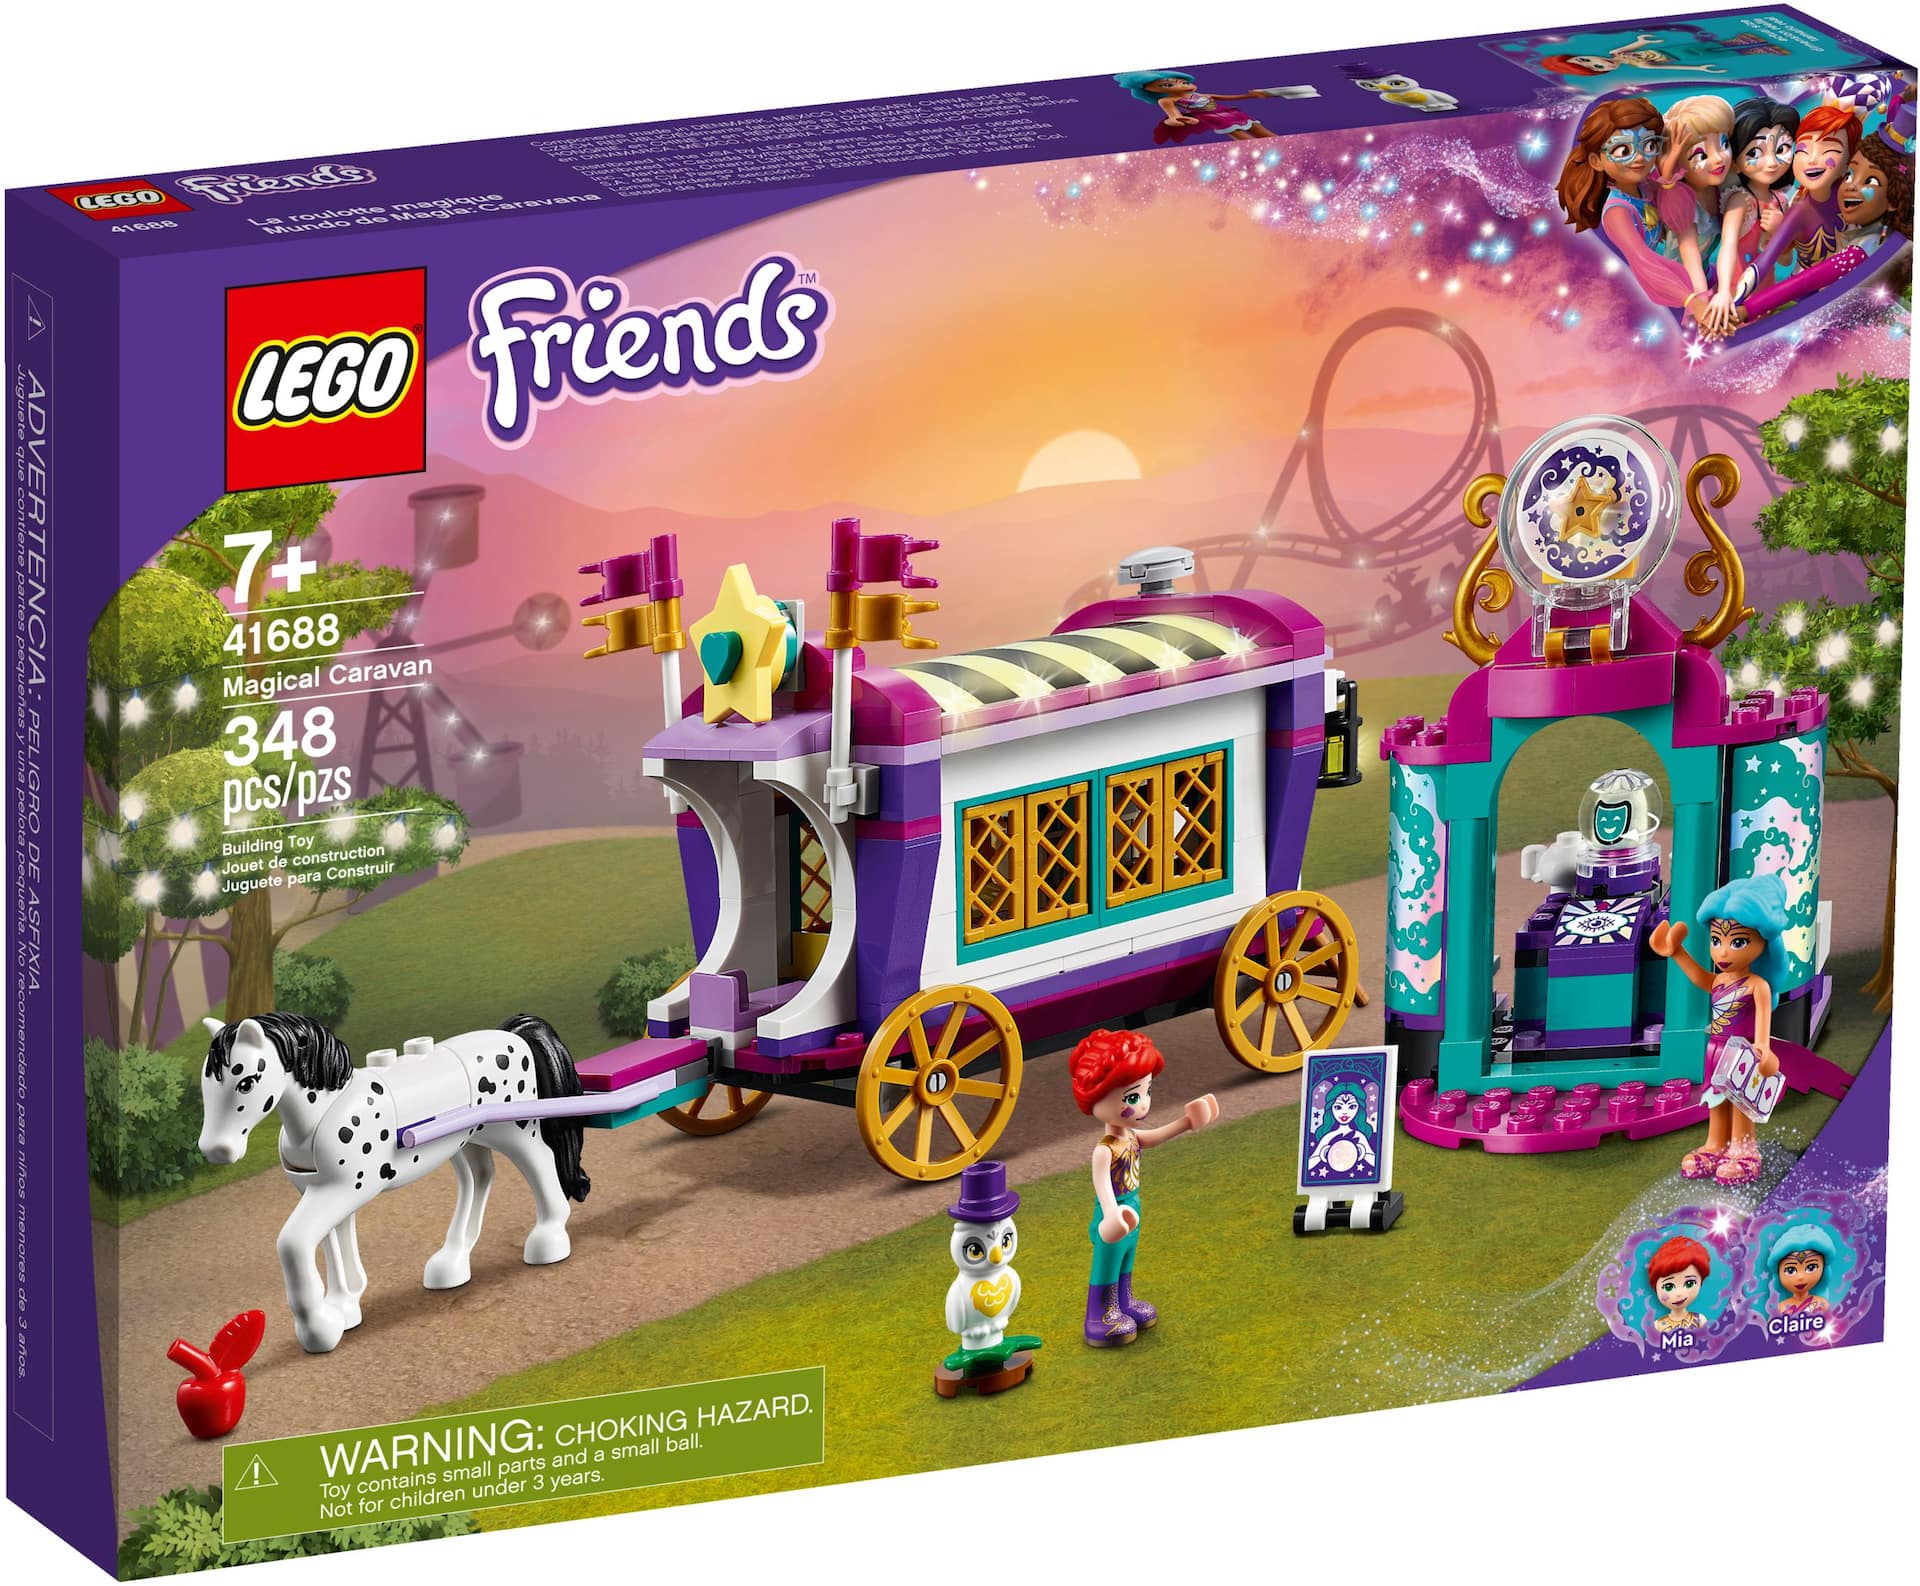 LEGO® Friends Magical Caravan - 41688, 348 pcs, Age 4+